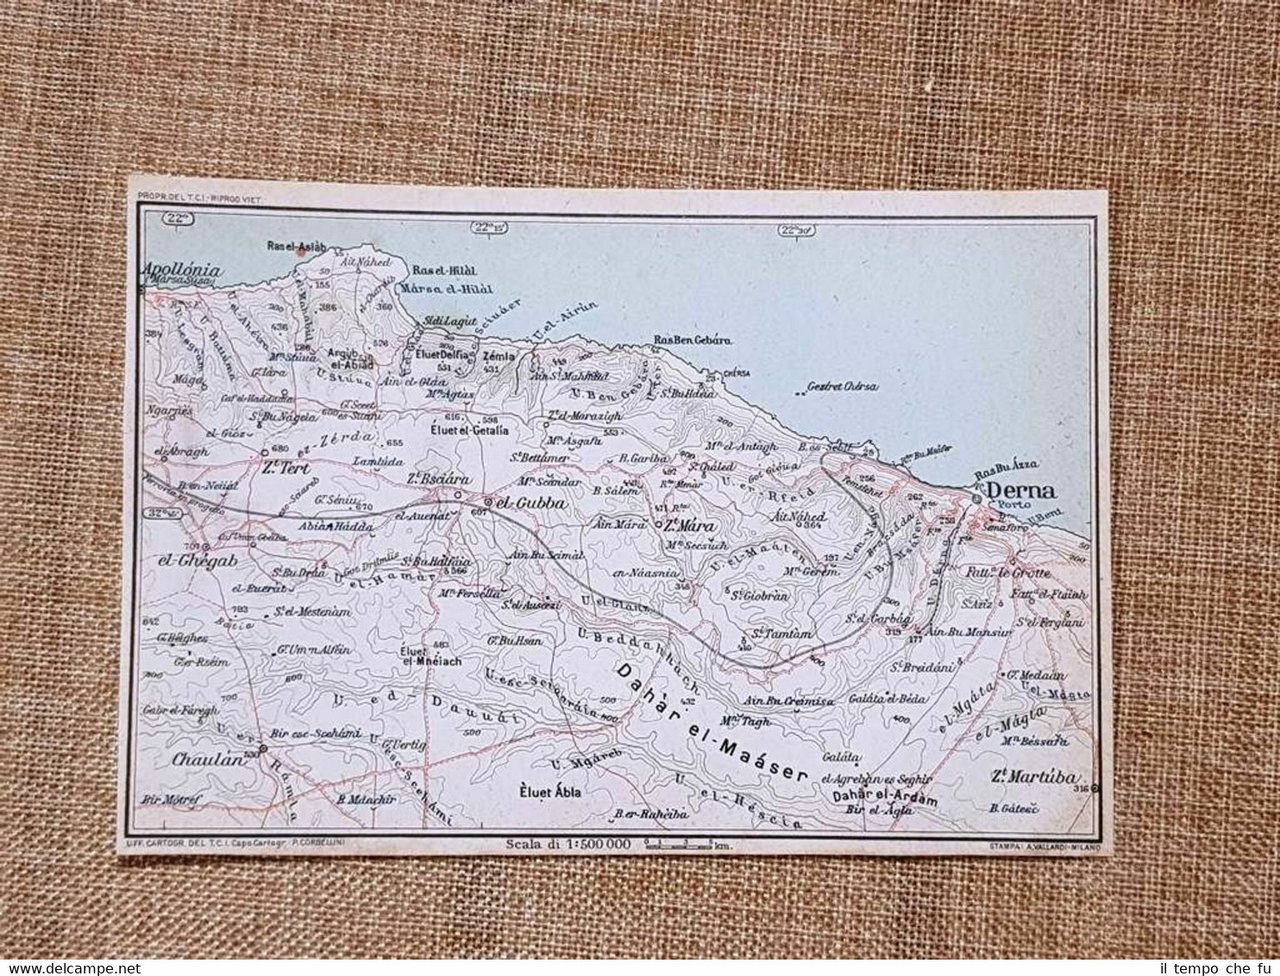 Carta o cartina del 1929 Derna Chaulàn Apollonia el-Gubba Cirenaica …